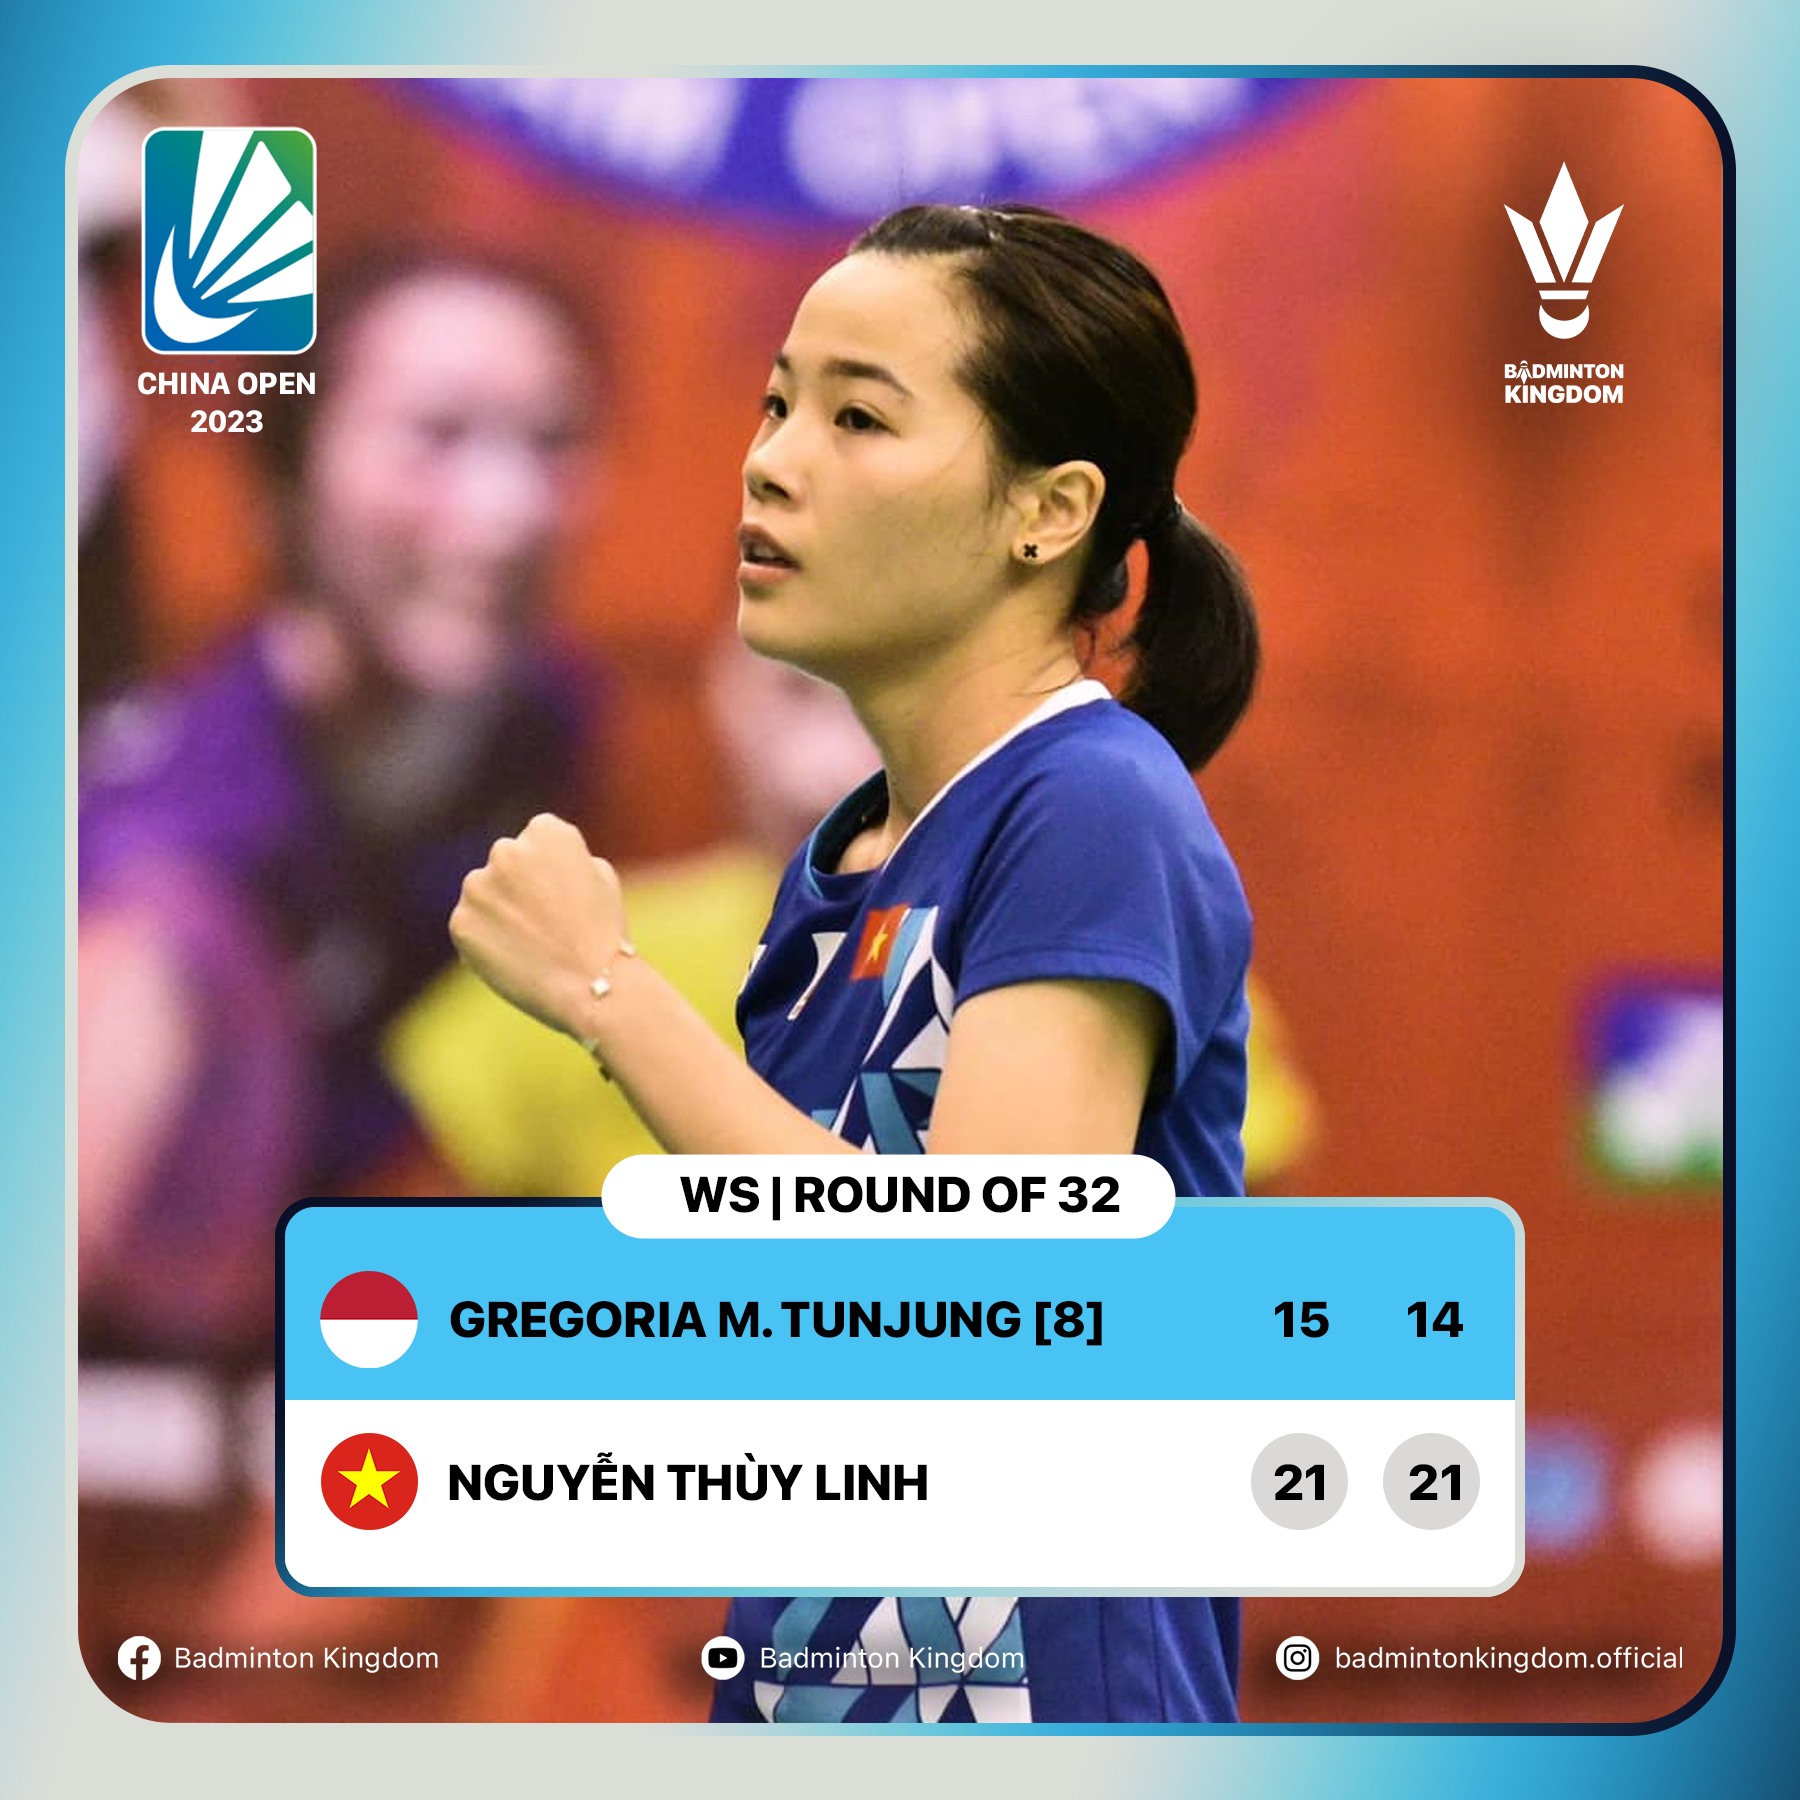 Nguyễn Thuỳ Linh đánh bại đối thủ người Indonesia tại vòng 1 giải China Open 2023. Ảnh: Badminton Kingdom